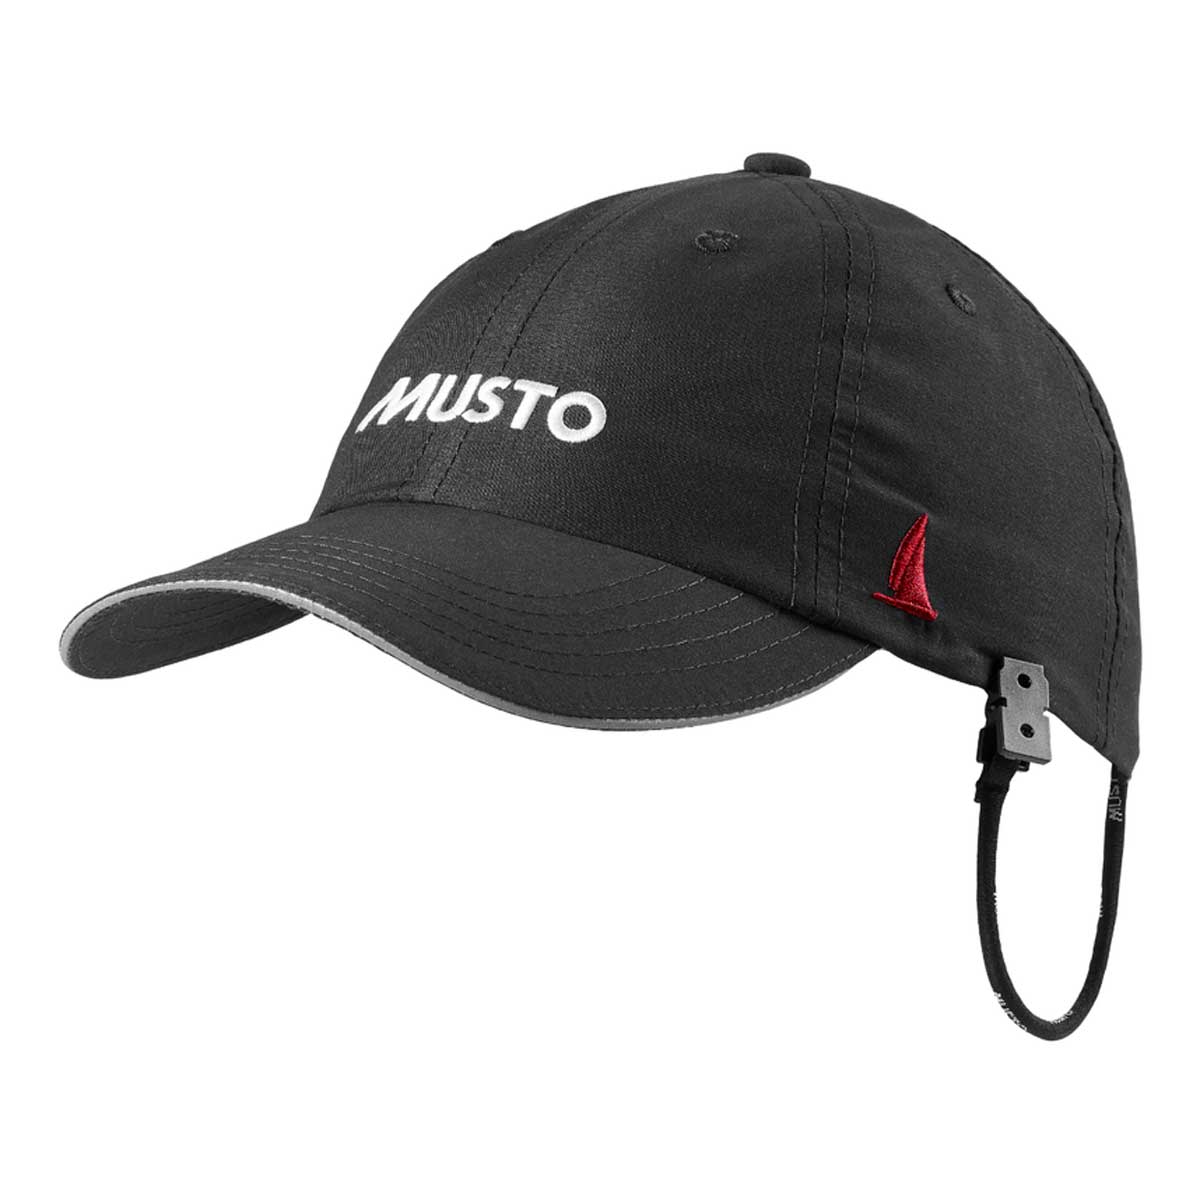 MUSTO Cap - Essential Evo Fast Dry Crew Cap - Black